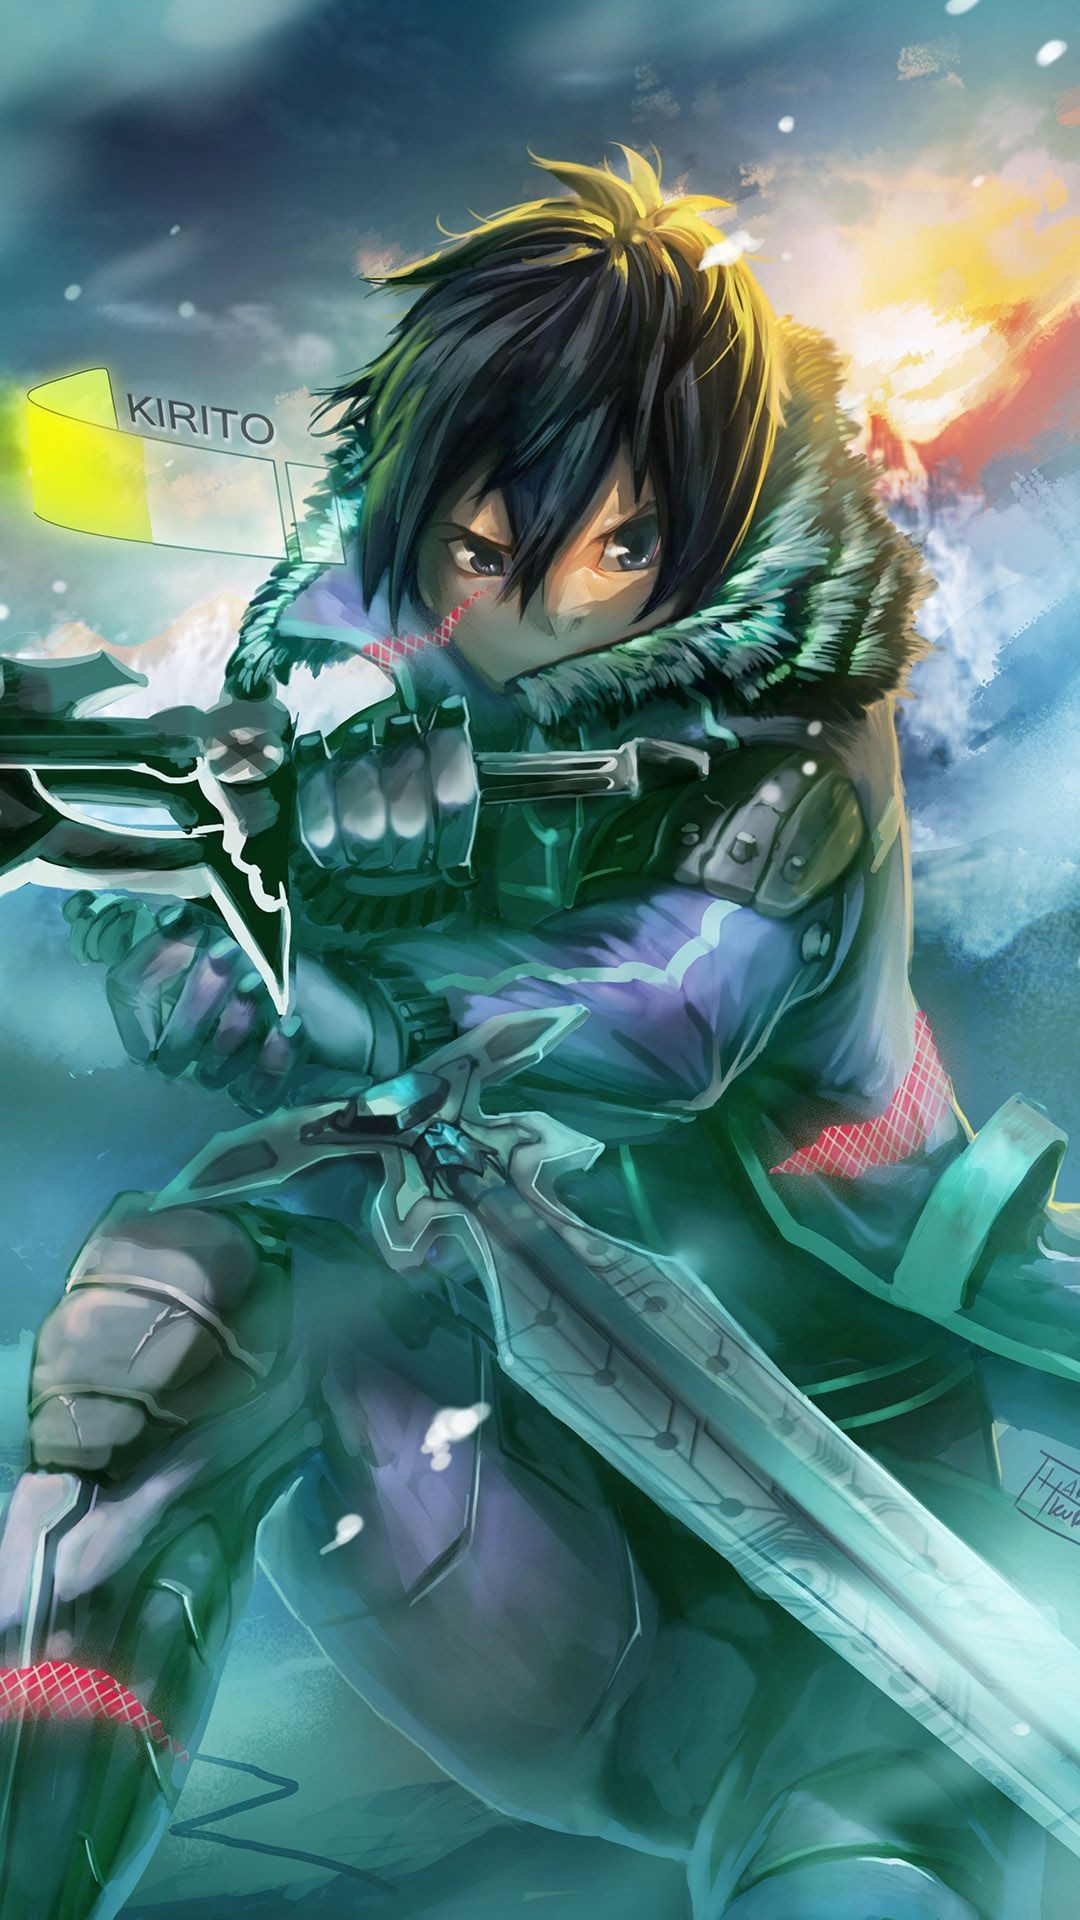 1080x1920 ... Kirito - Sword Art Online Anime mobile wallpaper